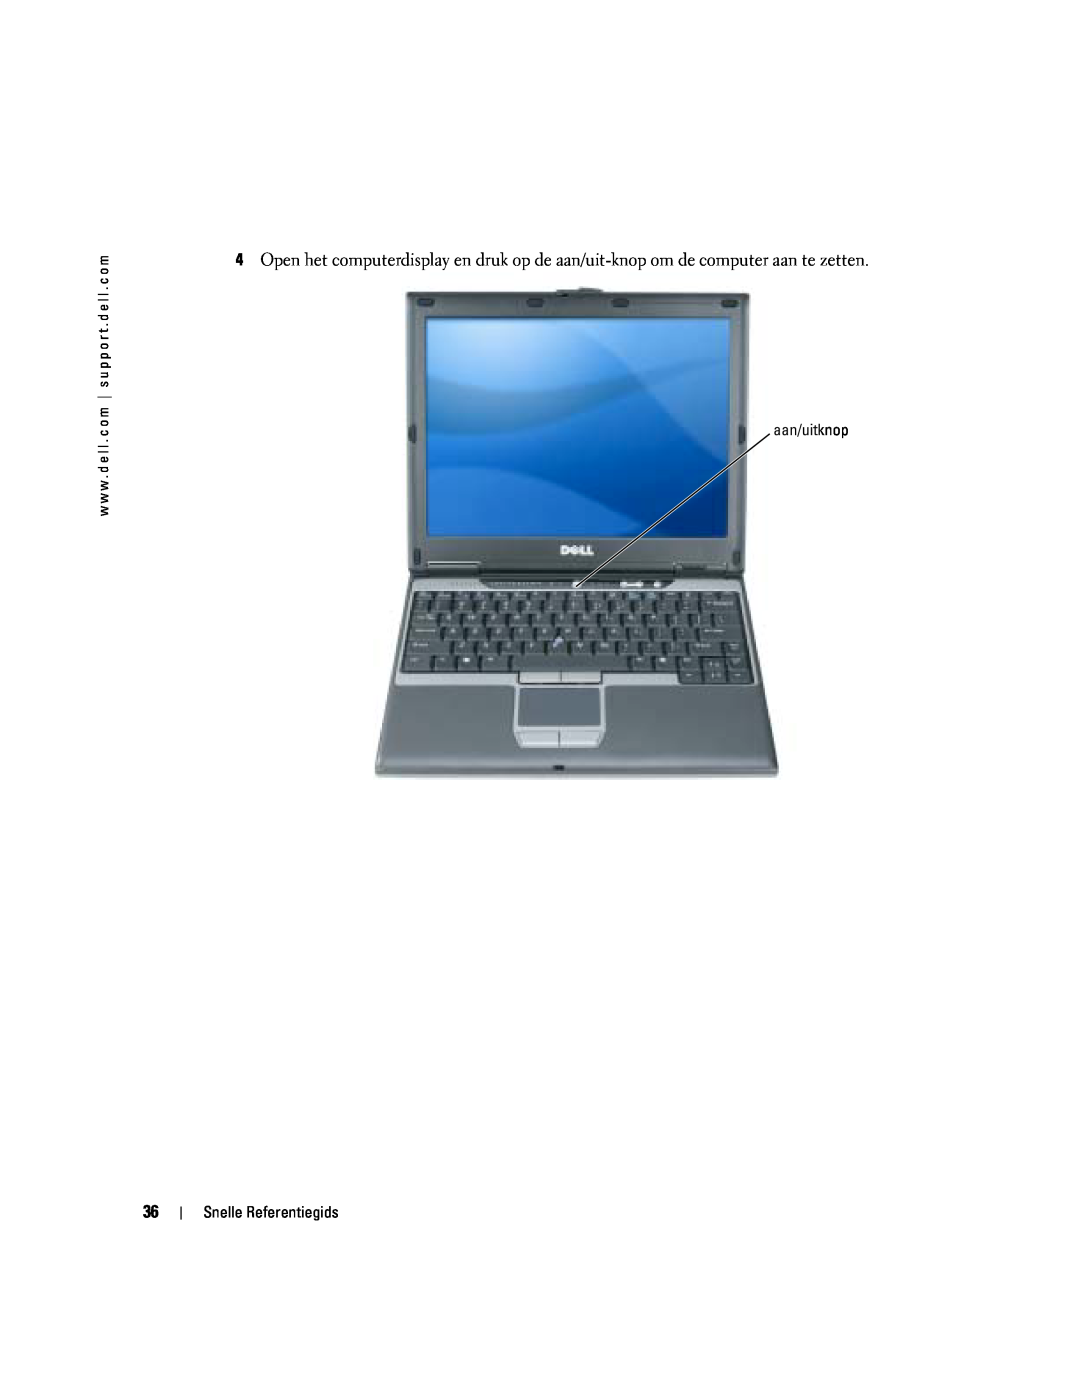 Dell PP06S manual aan/uitknop, Snelle Referentiegids 